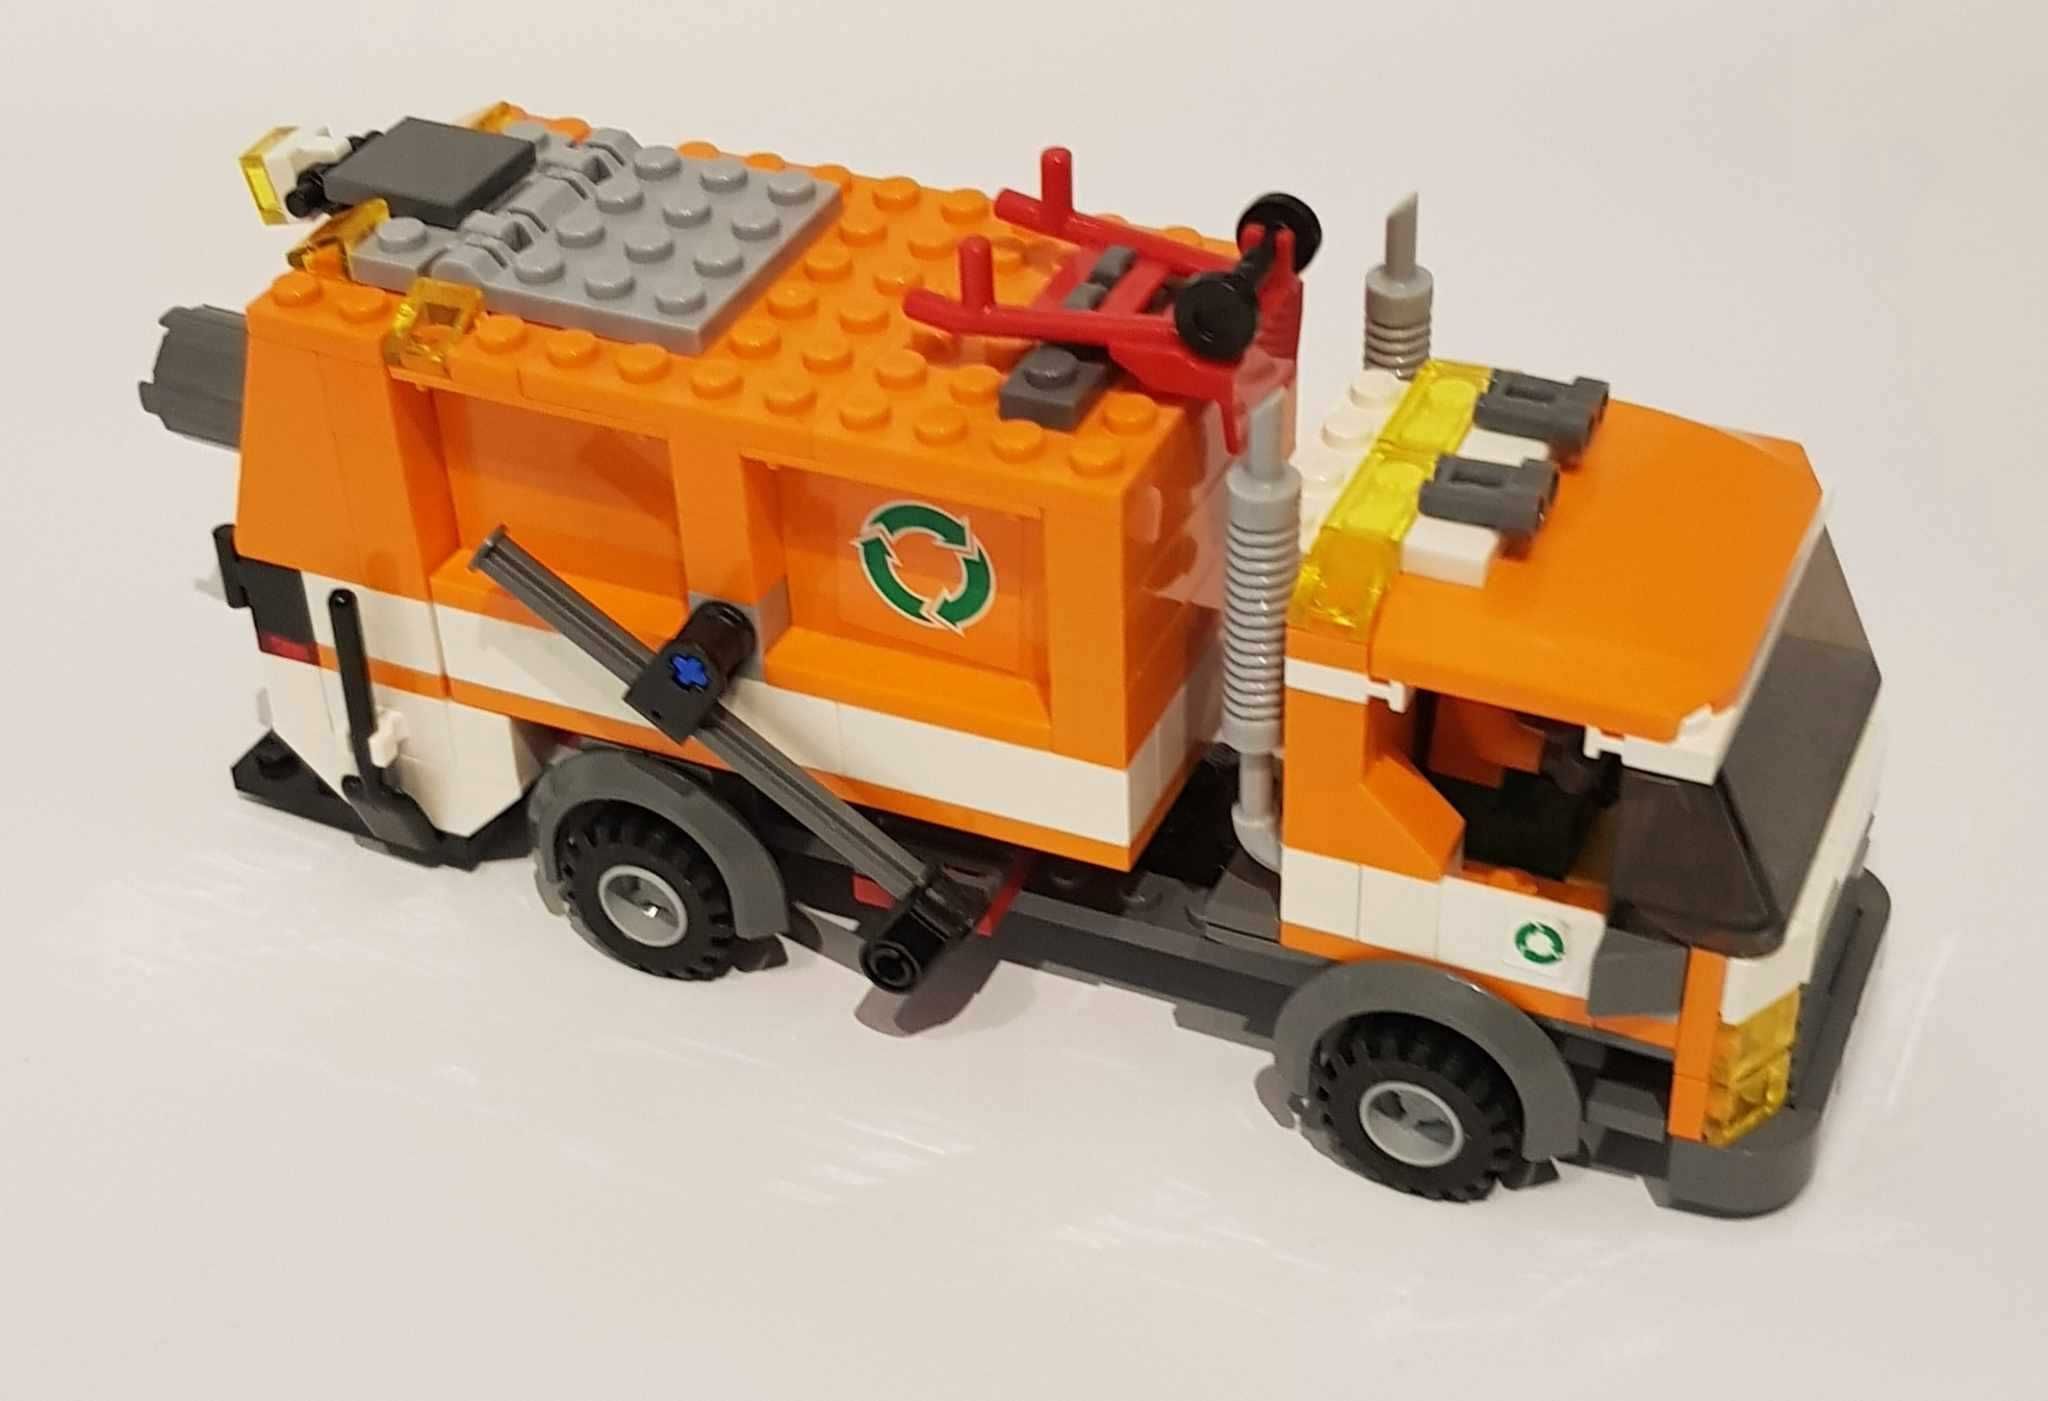 Lego City 7991 Śmieciarka Recycle Truck